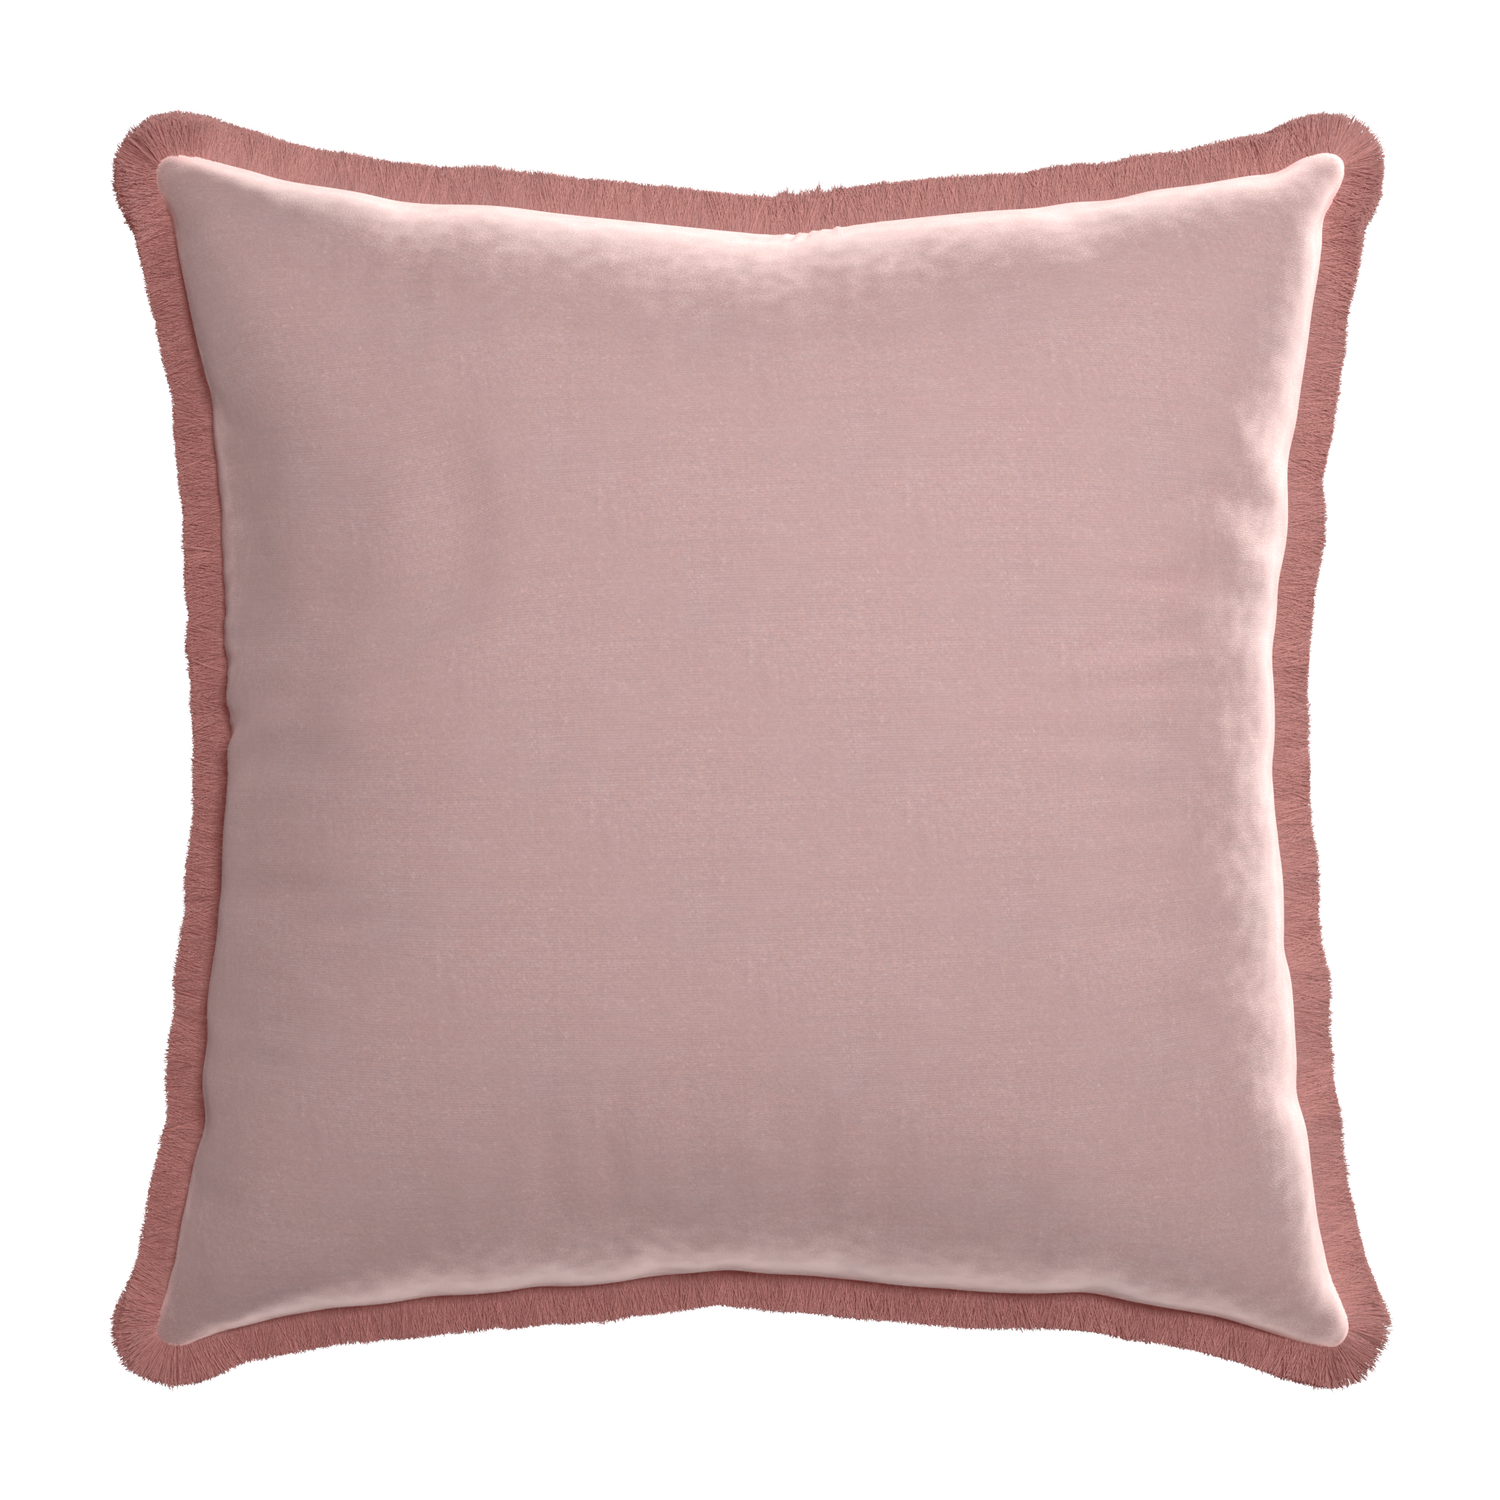 Euro-sham mauve velvet custom pillow with d fringe on white background